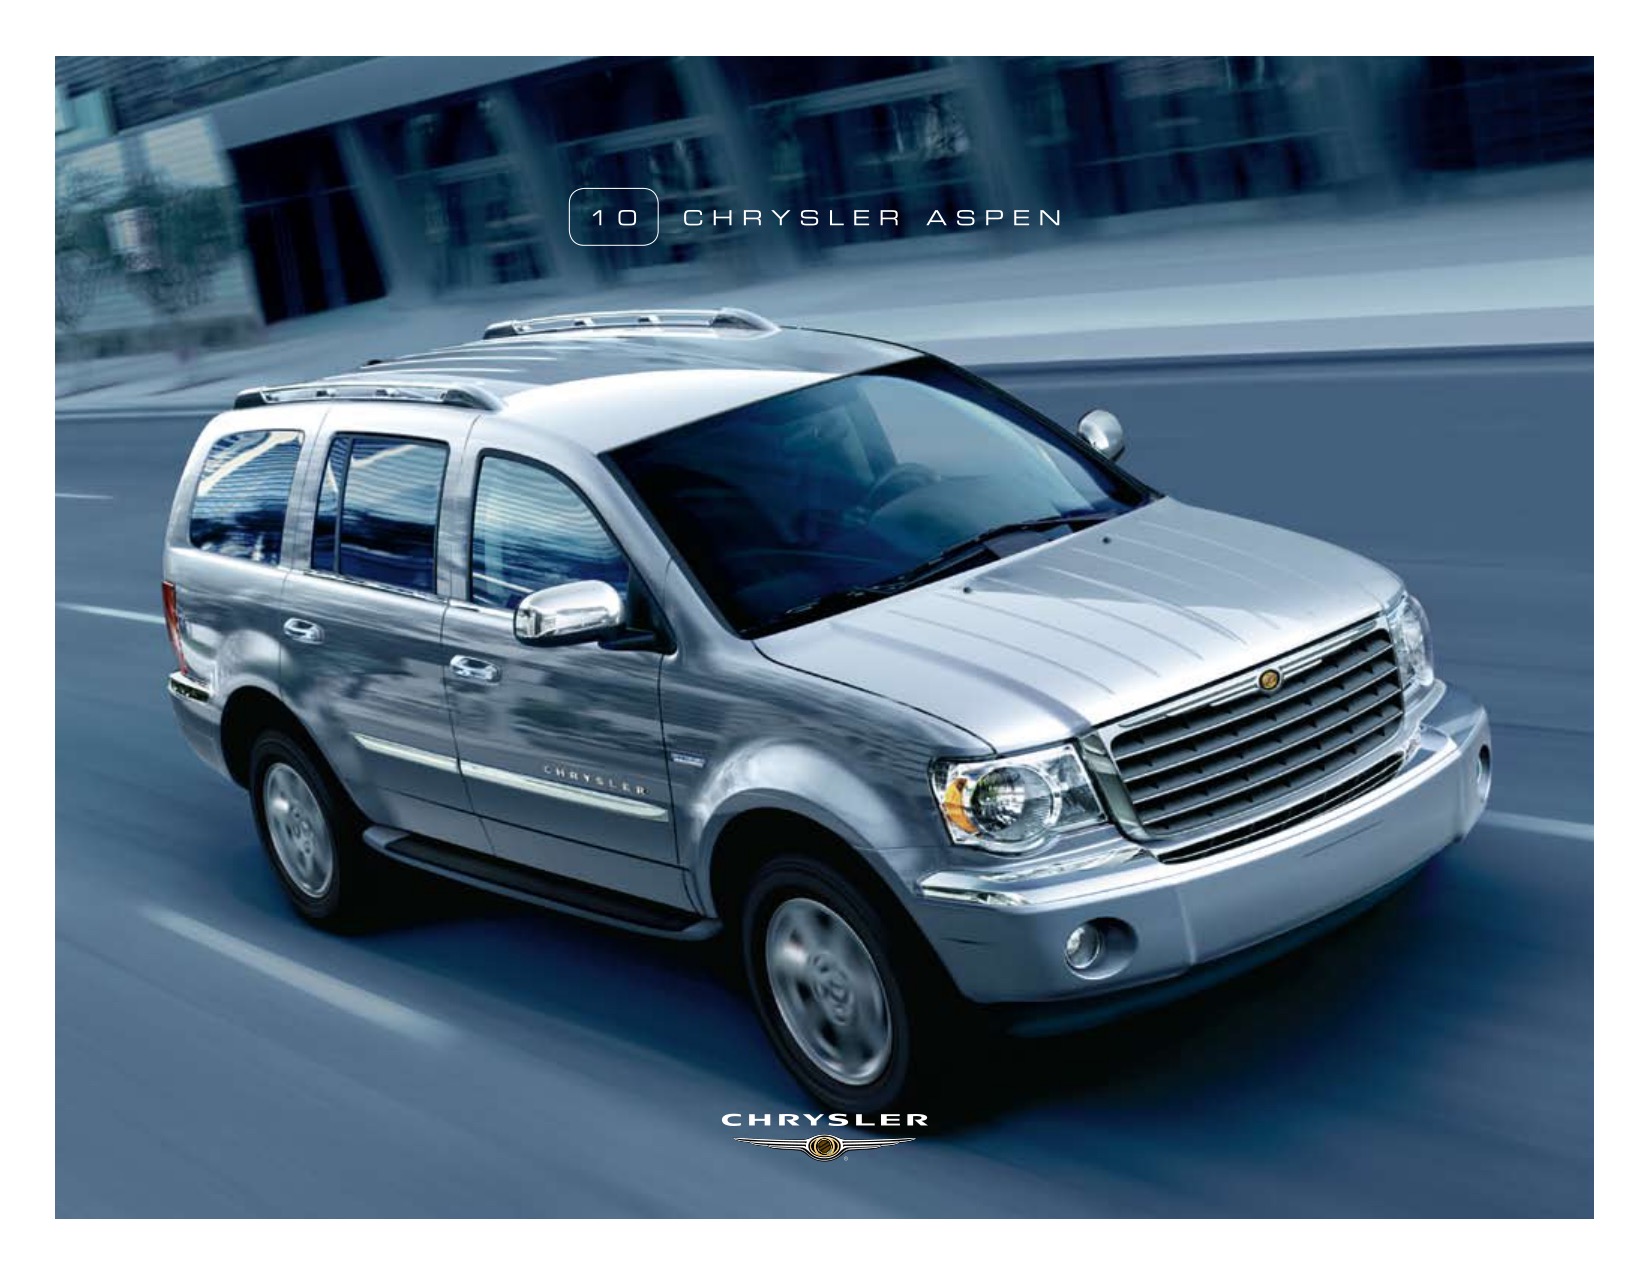 2010 Chrysler Aspen Brochure